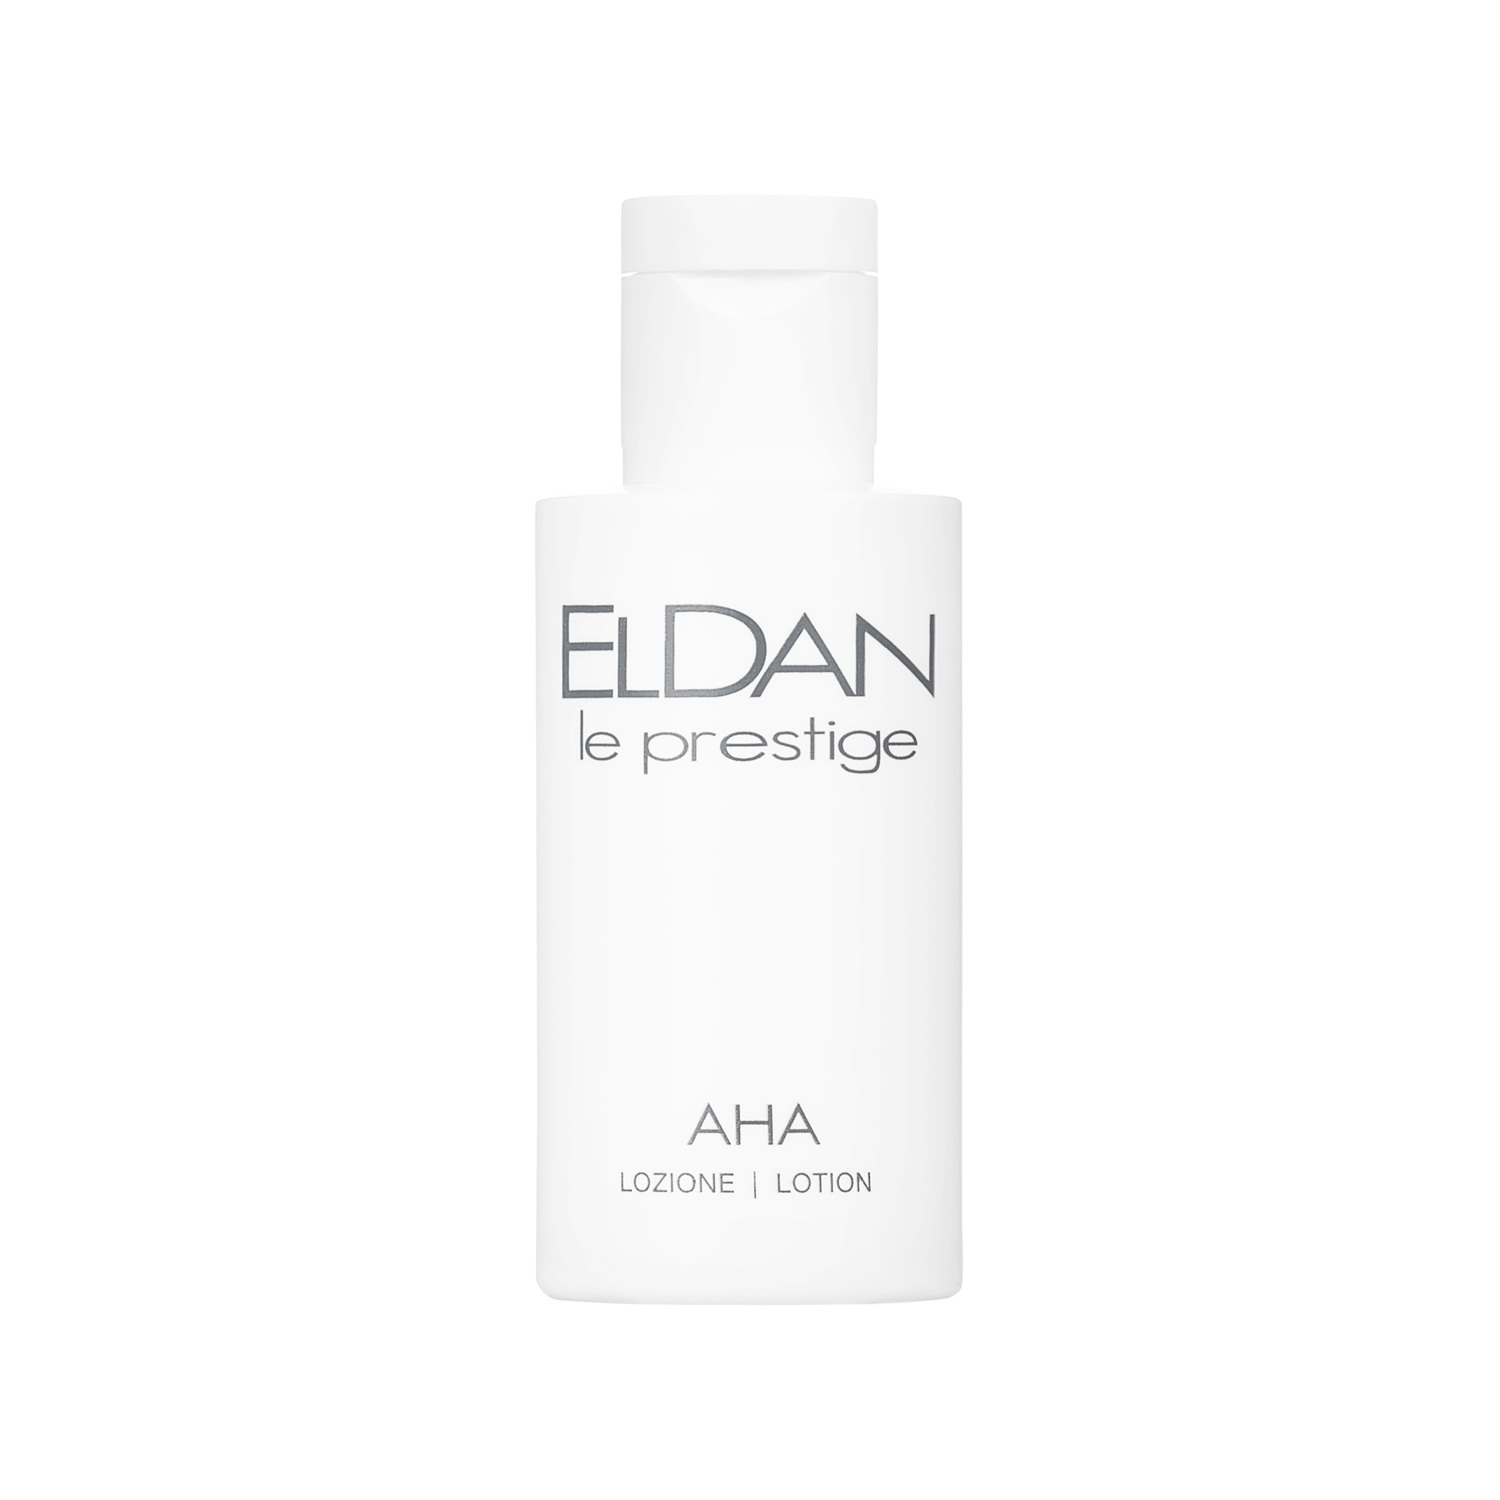 Пилинг для лица ELDAN Cosmetics AHA Peel Lotion с кислотами, профессиональный, 50 мл гликолевый пилинг 70% new peel glycolic gel peel 70%